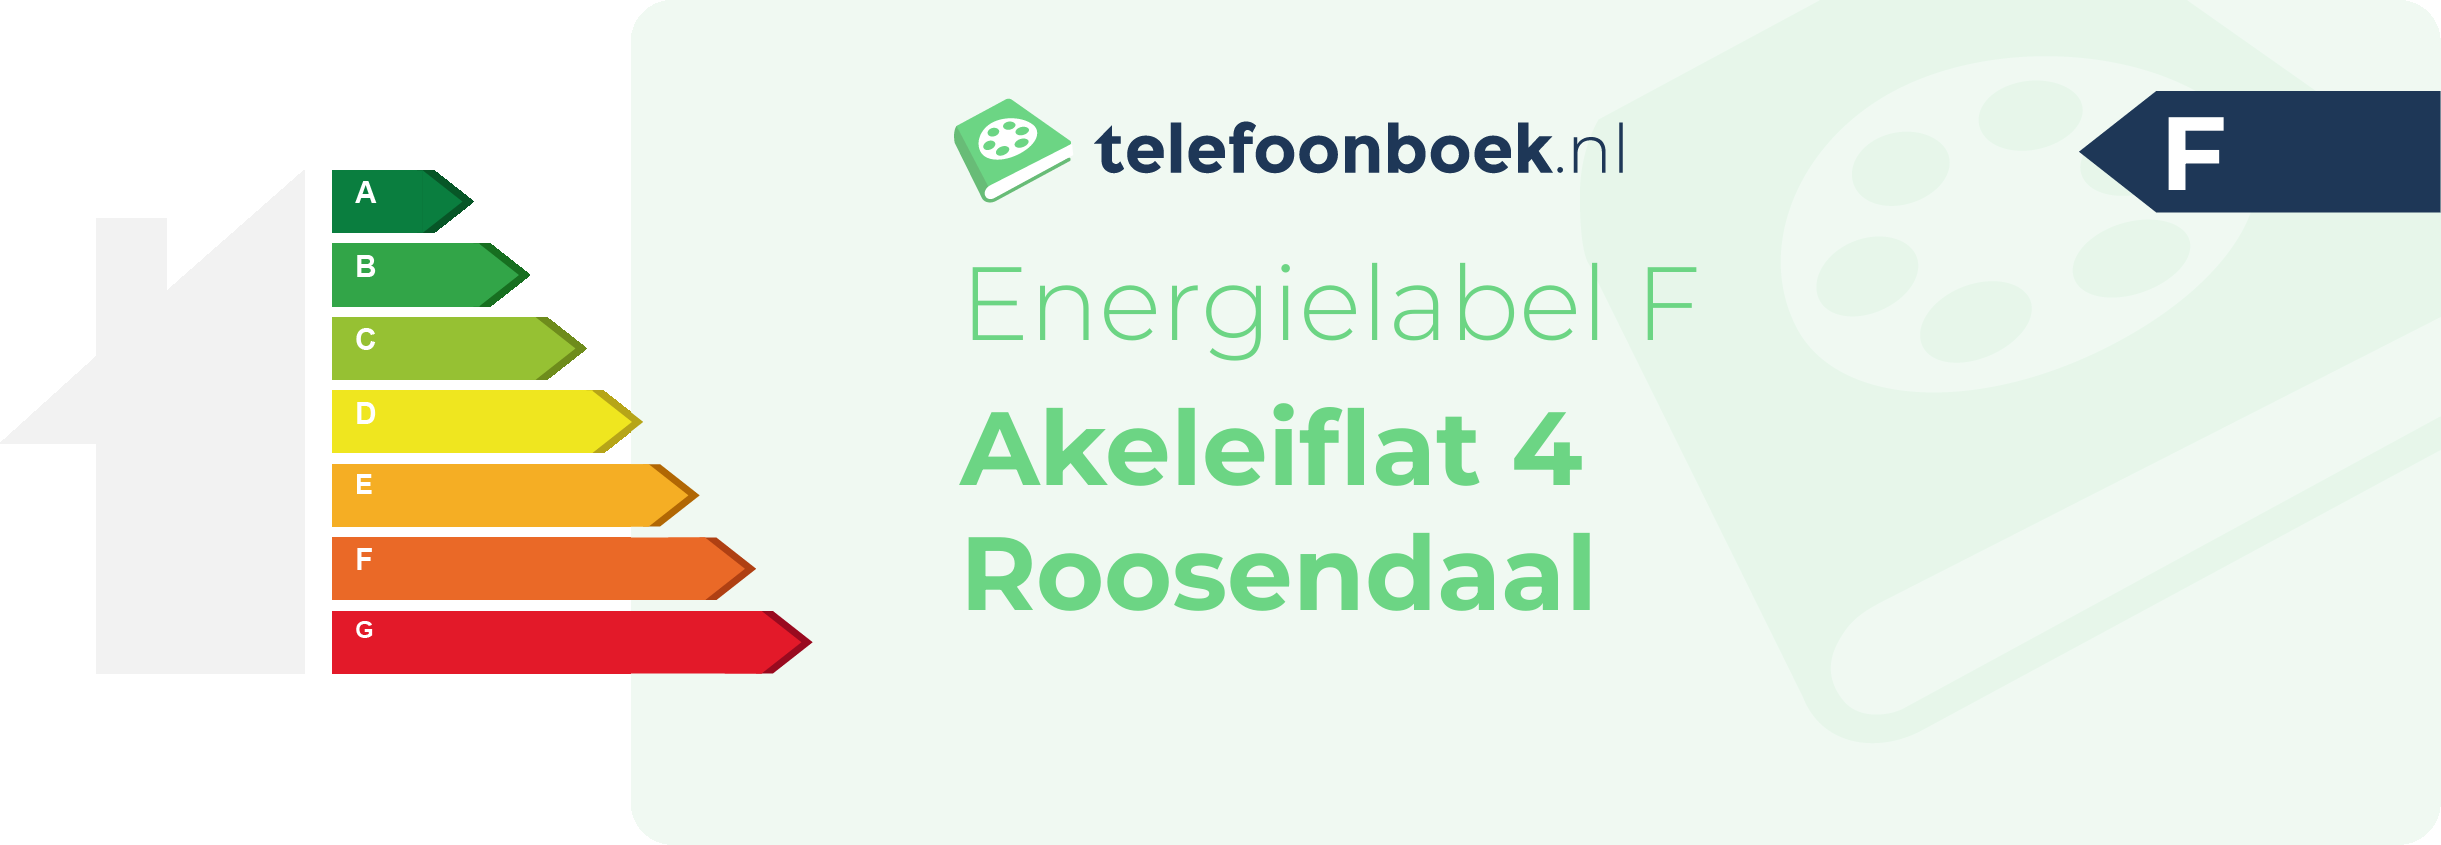 Energielabel Akeleiflat 4 Roosendaal